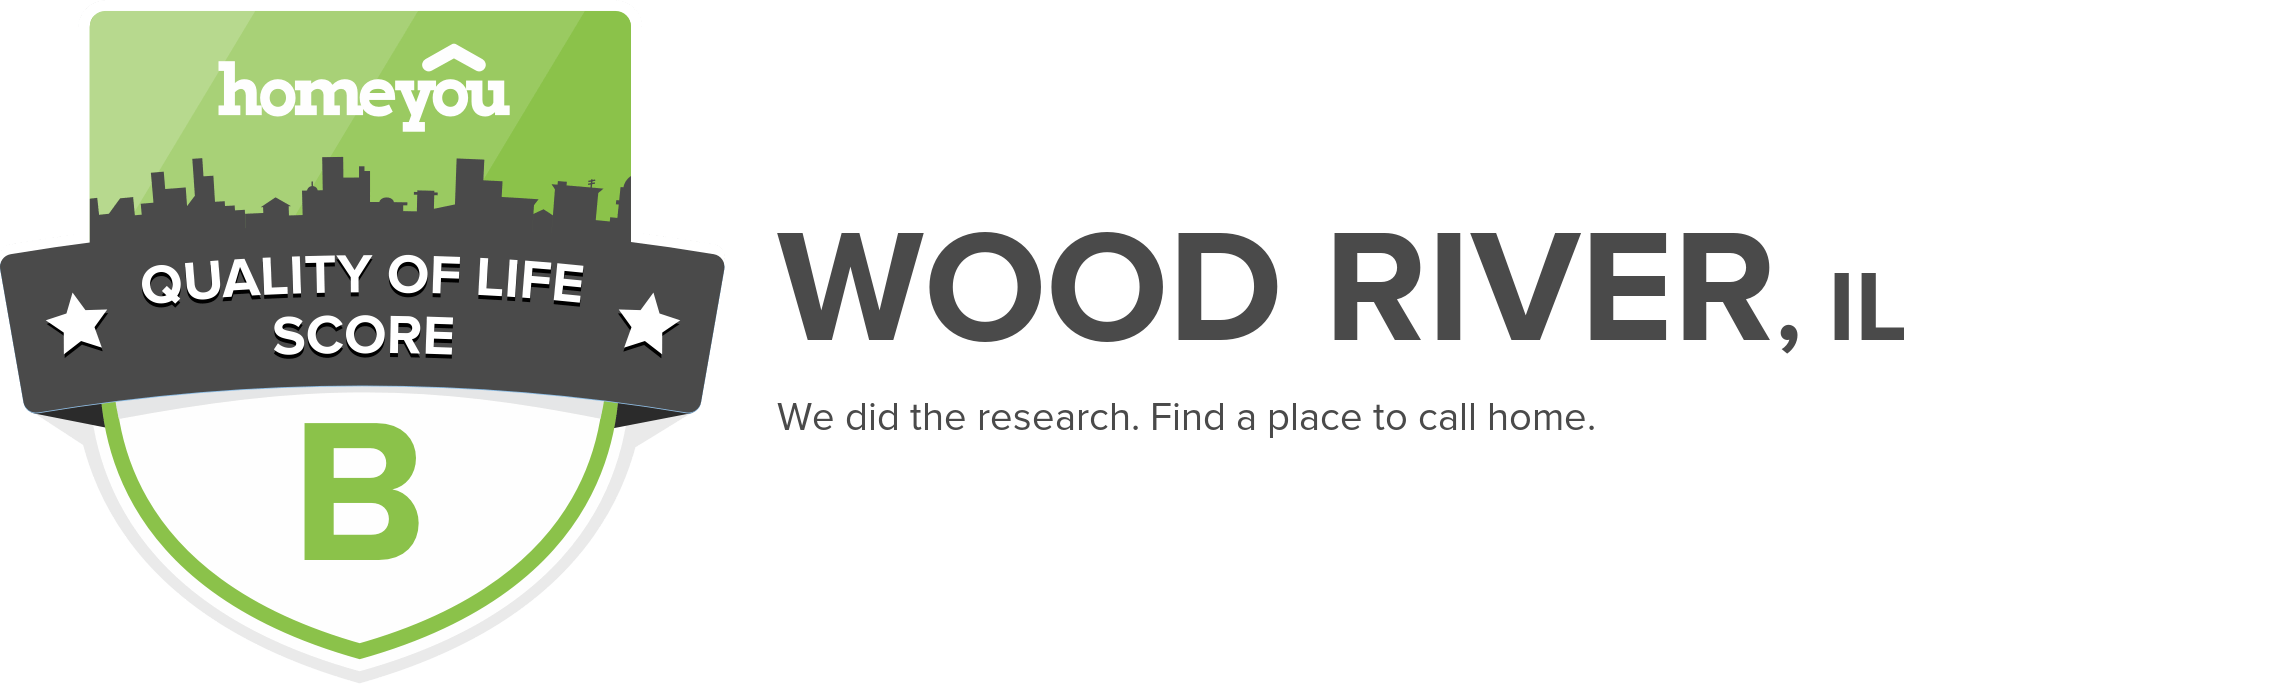 Wood River, IL